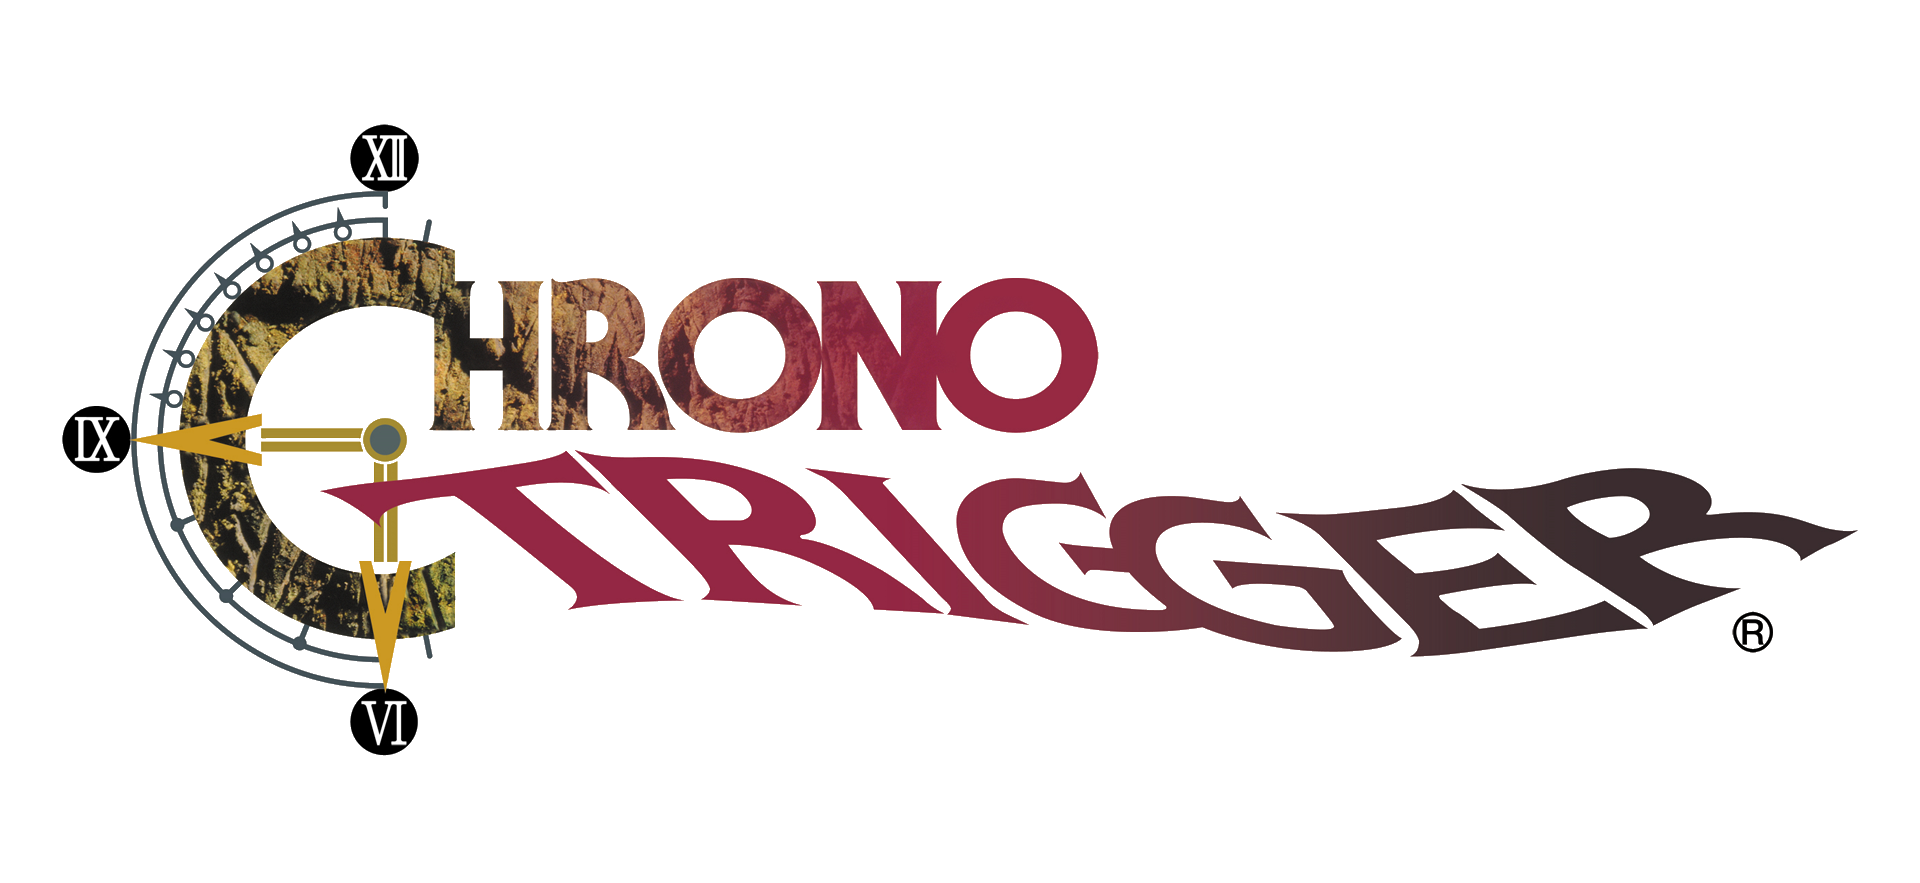 Chrono Trigger PNG Photos